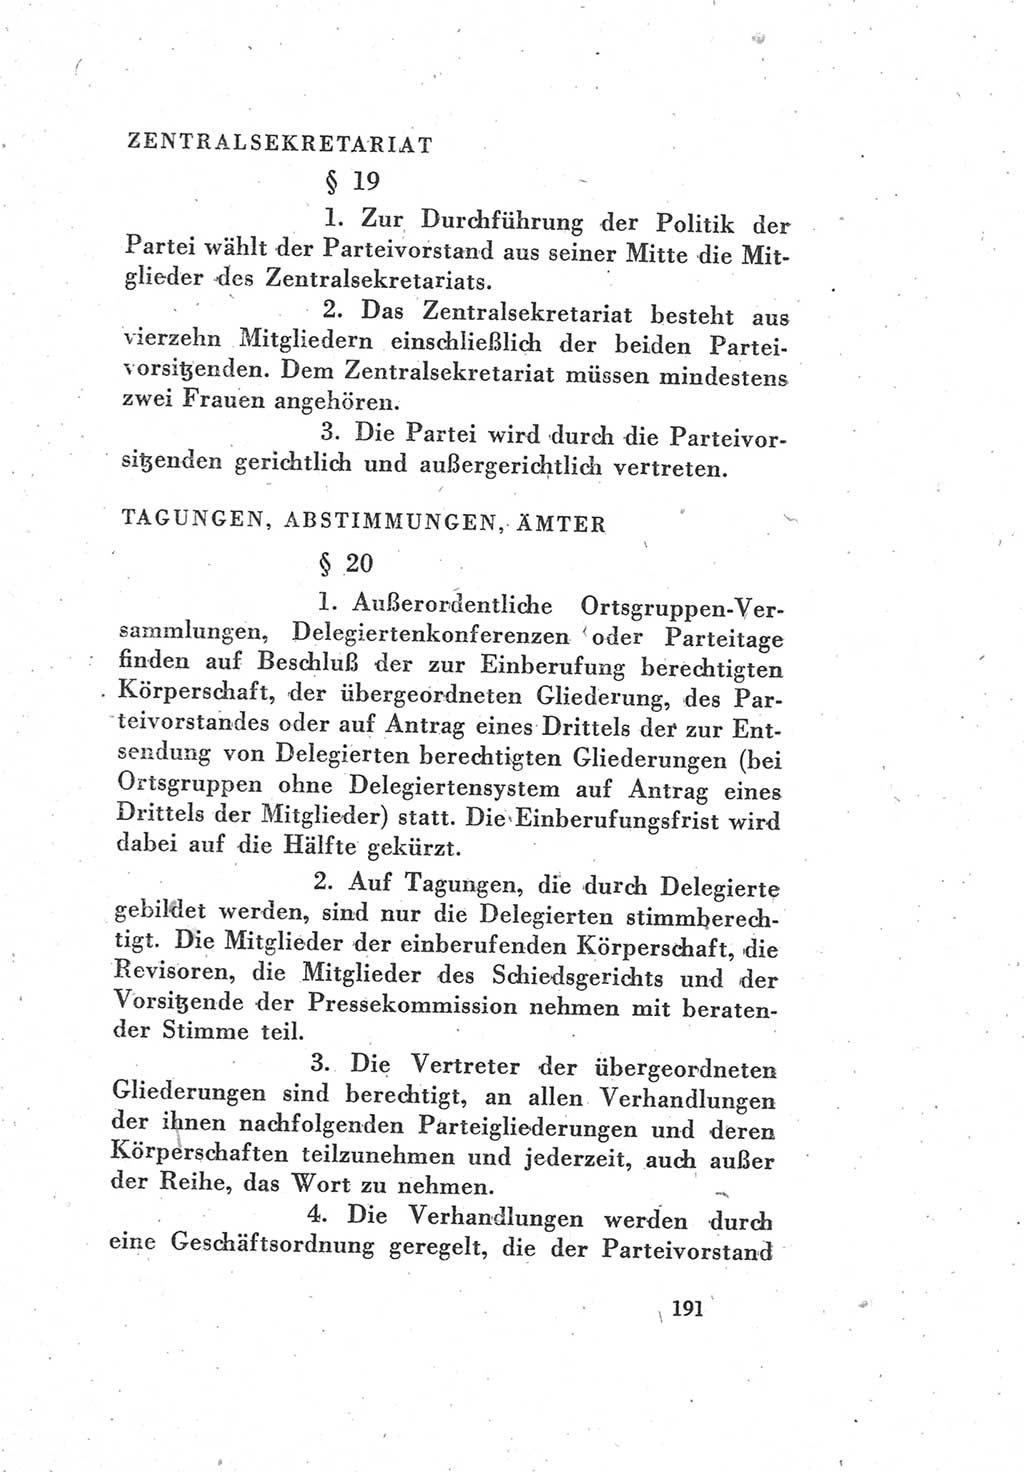 Protokoll des Vereinigungsparteitages der Sozialdemokratischen Partei Deutschlands (SPD) und der Kommunistischen Partei Deutschlands (KPD) [Sowjetische Besatzungszone (SBZ) Deutschlands] 1946, Seite 191 (Prot. VPT SPD KPD SBZ Dtl. 1946, S. 191)